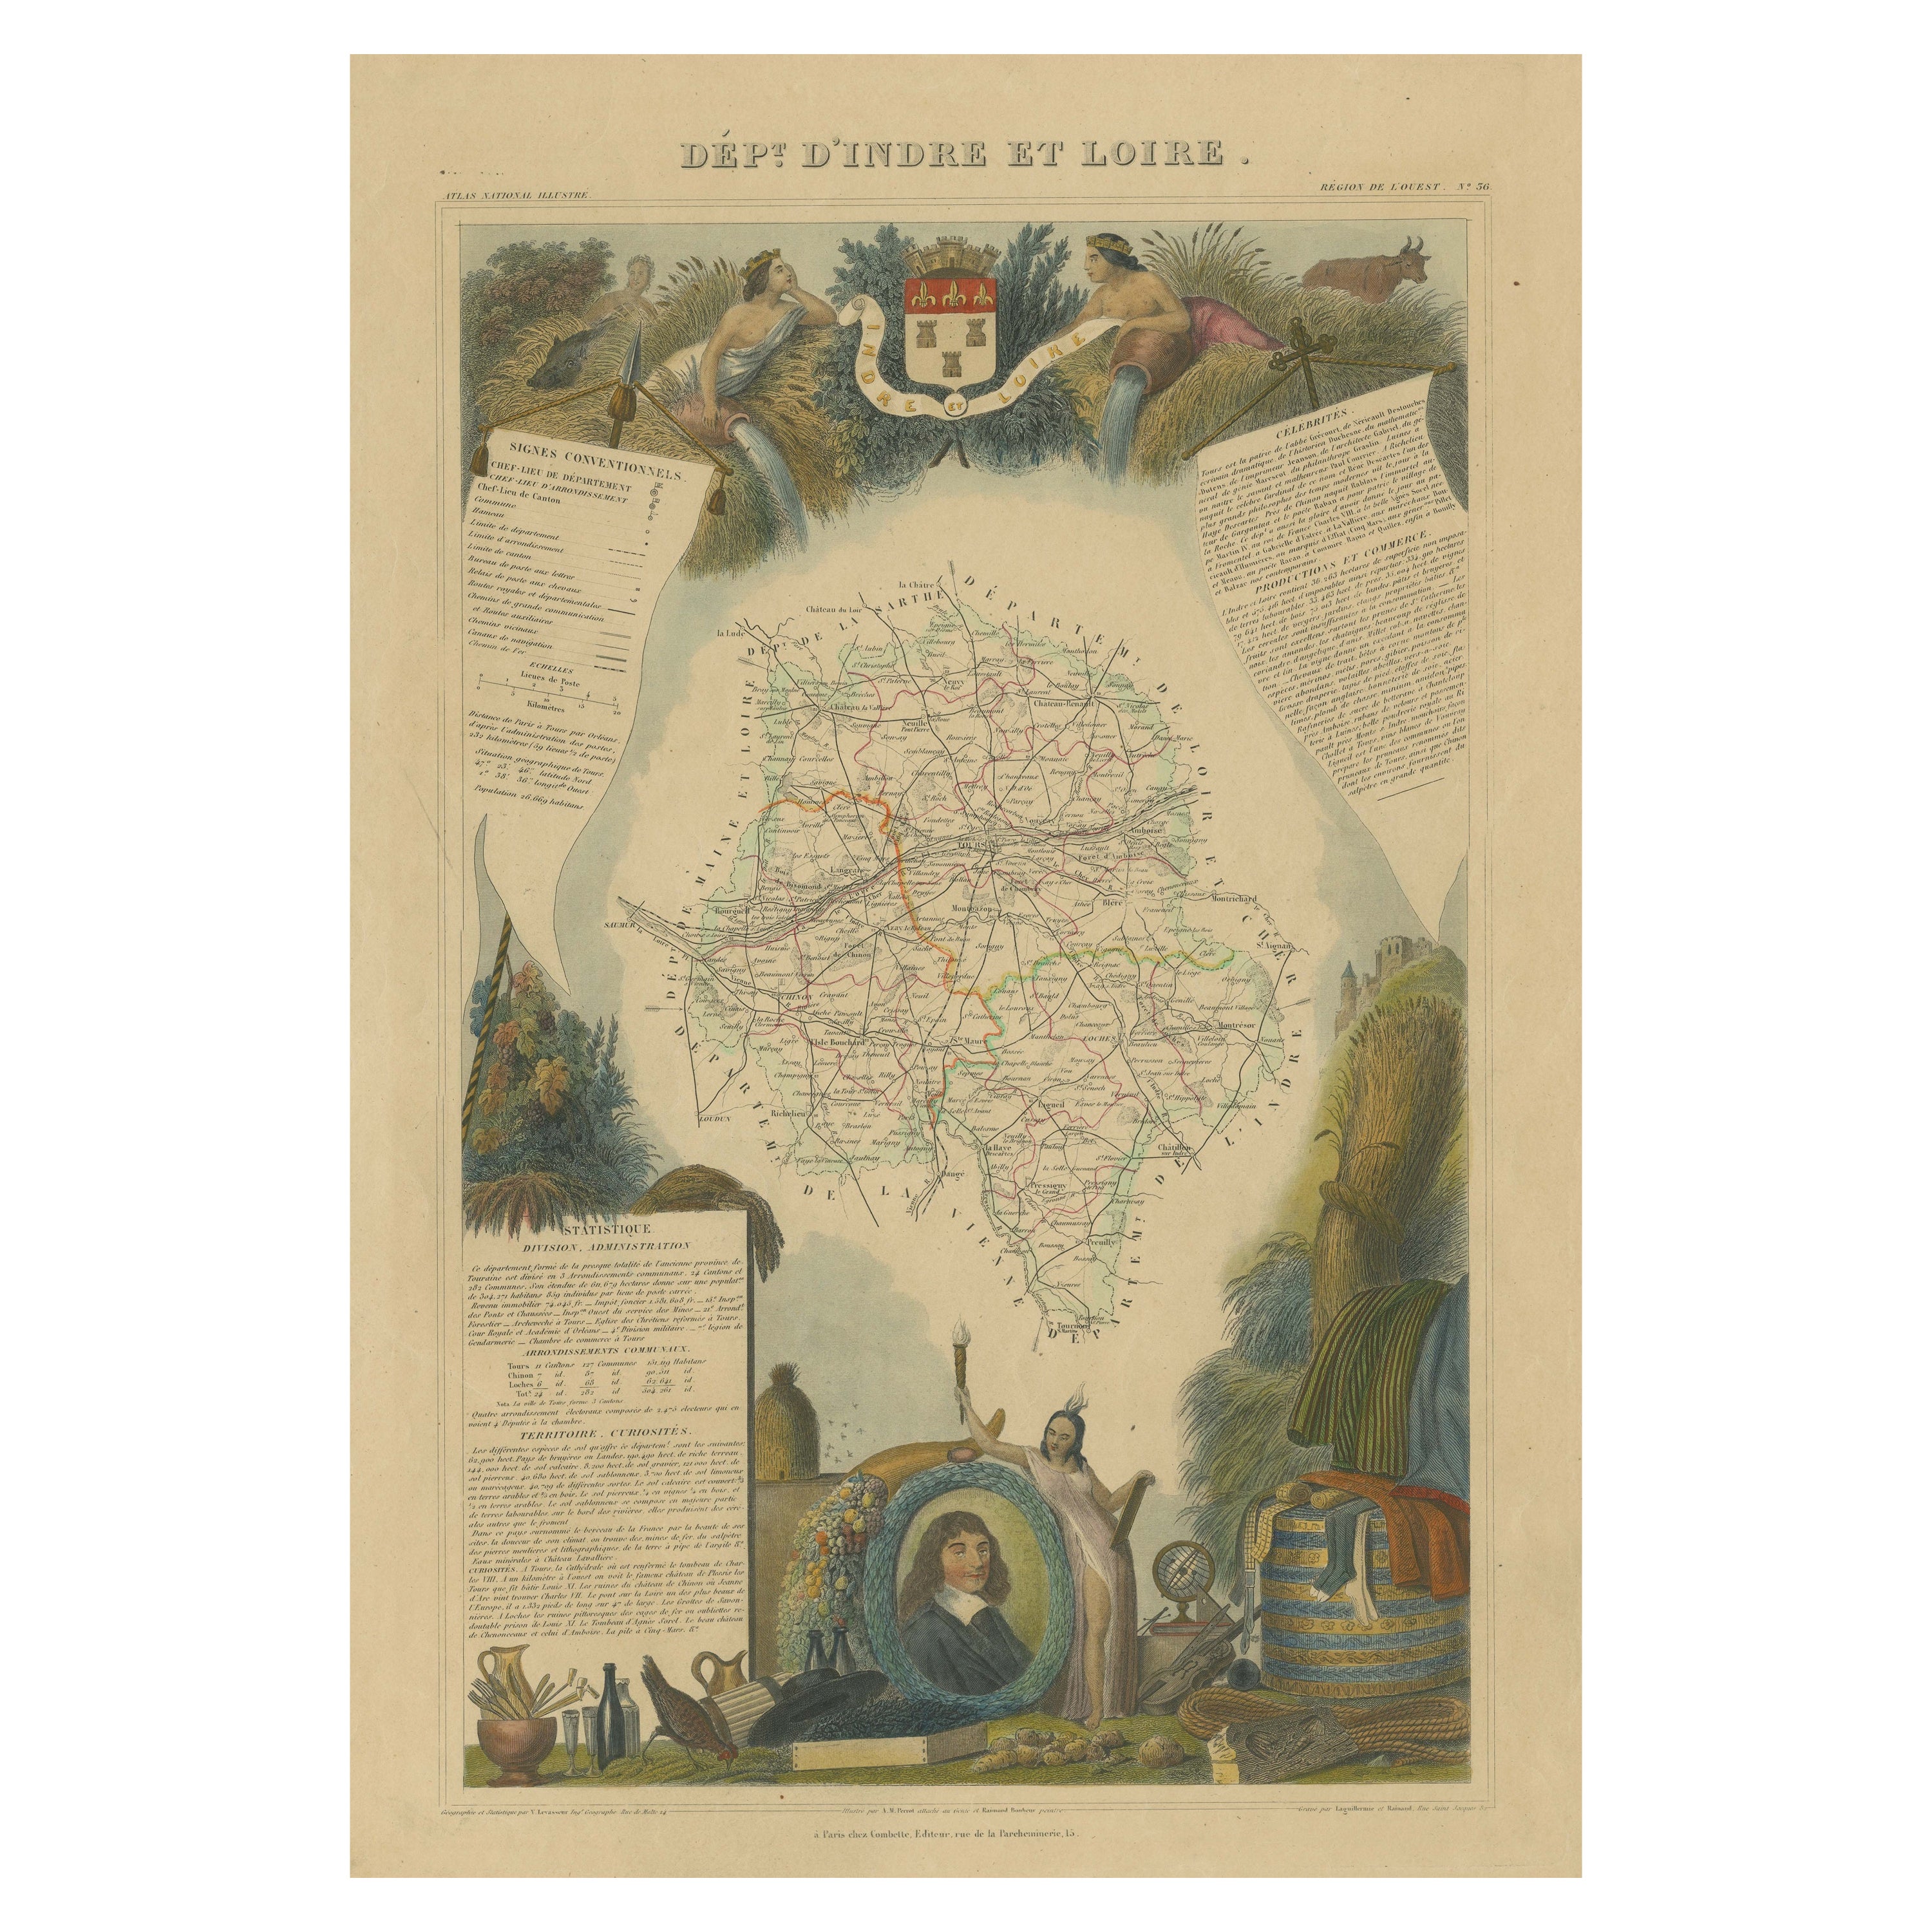 Carte ancienne colorée à la main du département d'Inde et de la Loire, France